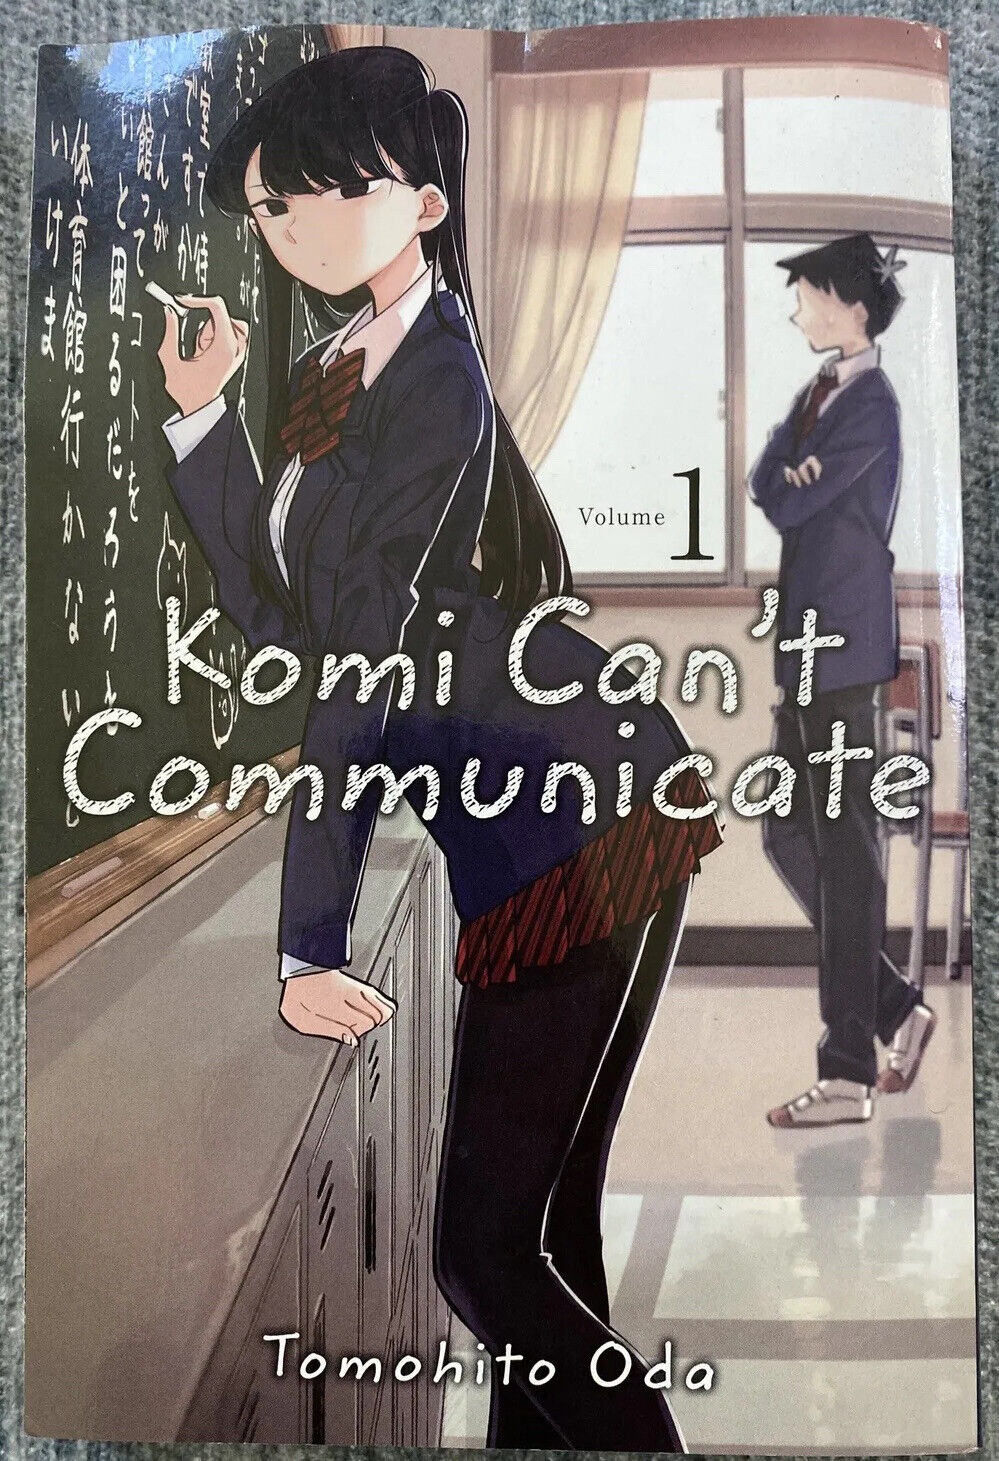 Manga Komi Can’t Communicate Volume 1 Tomohito Oda English